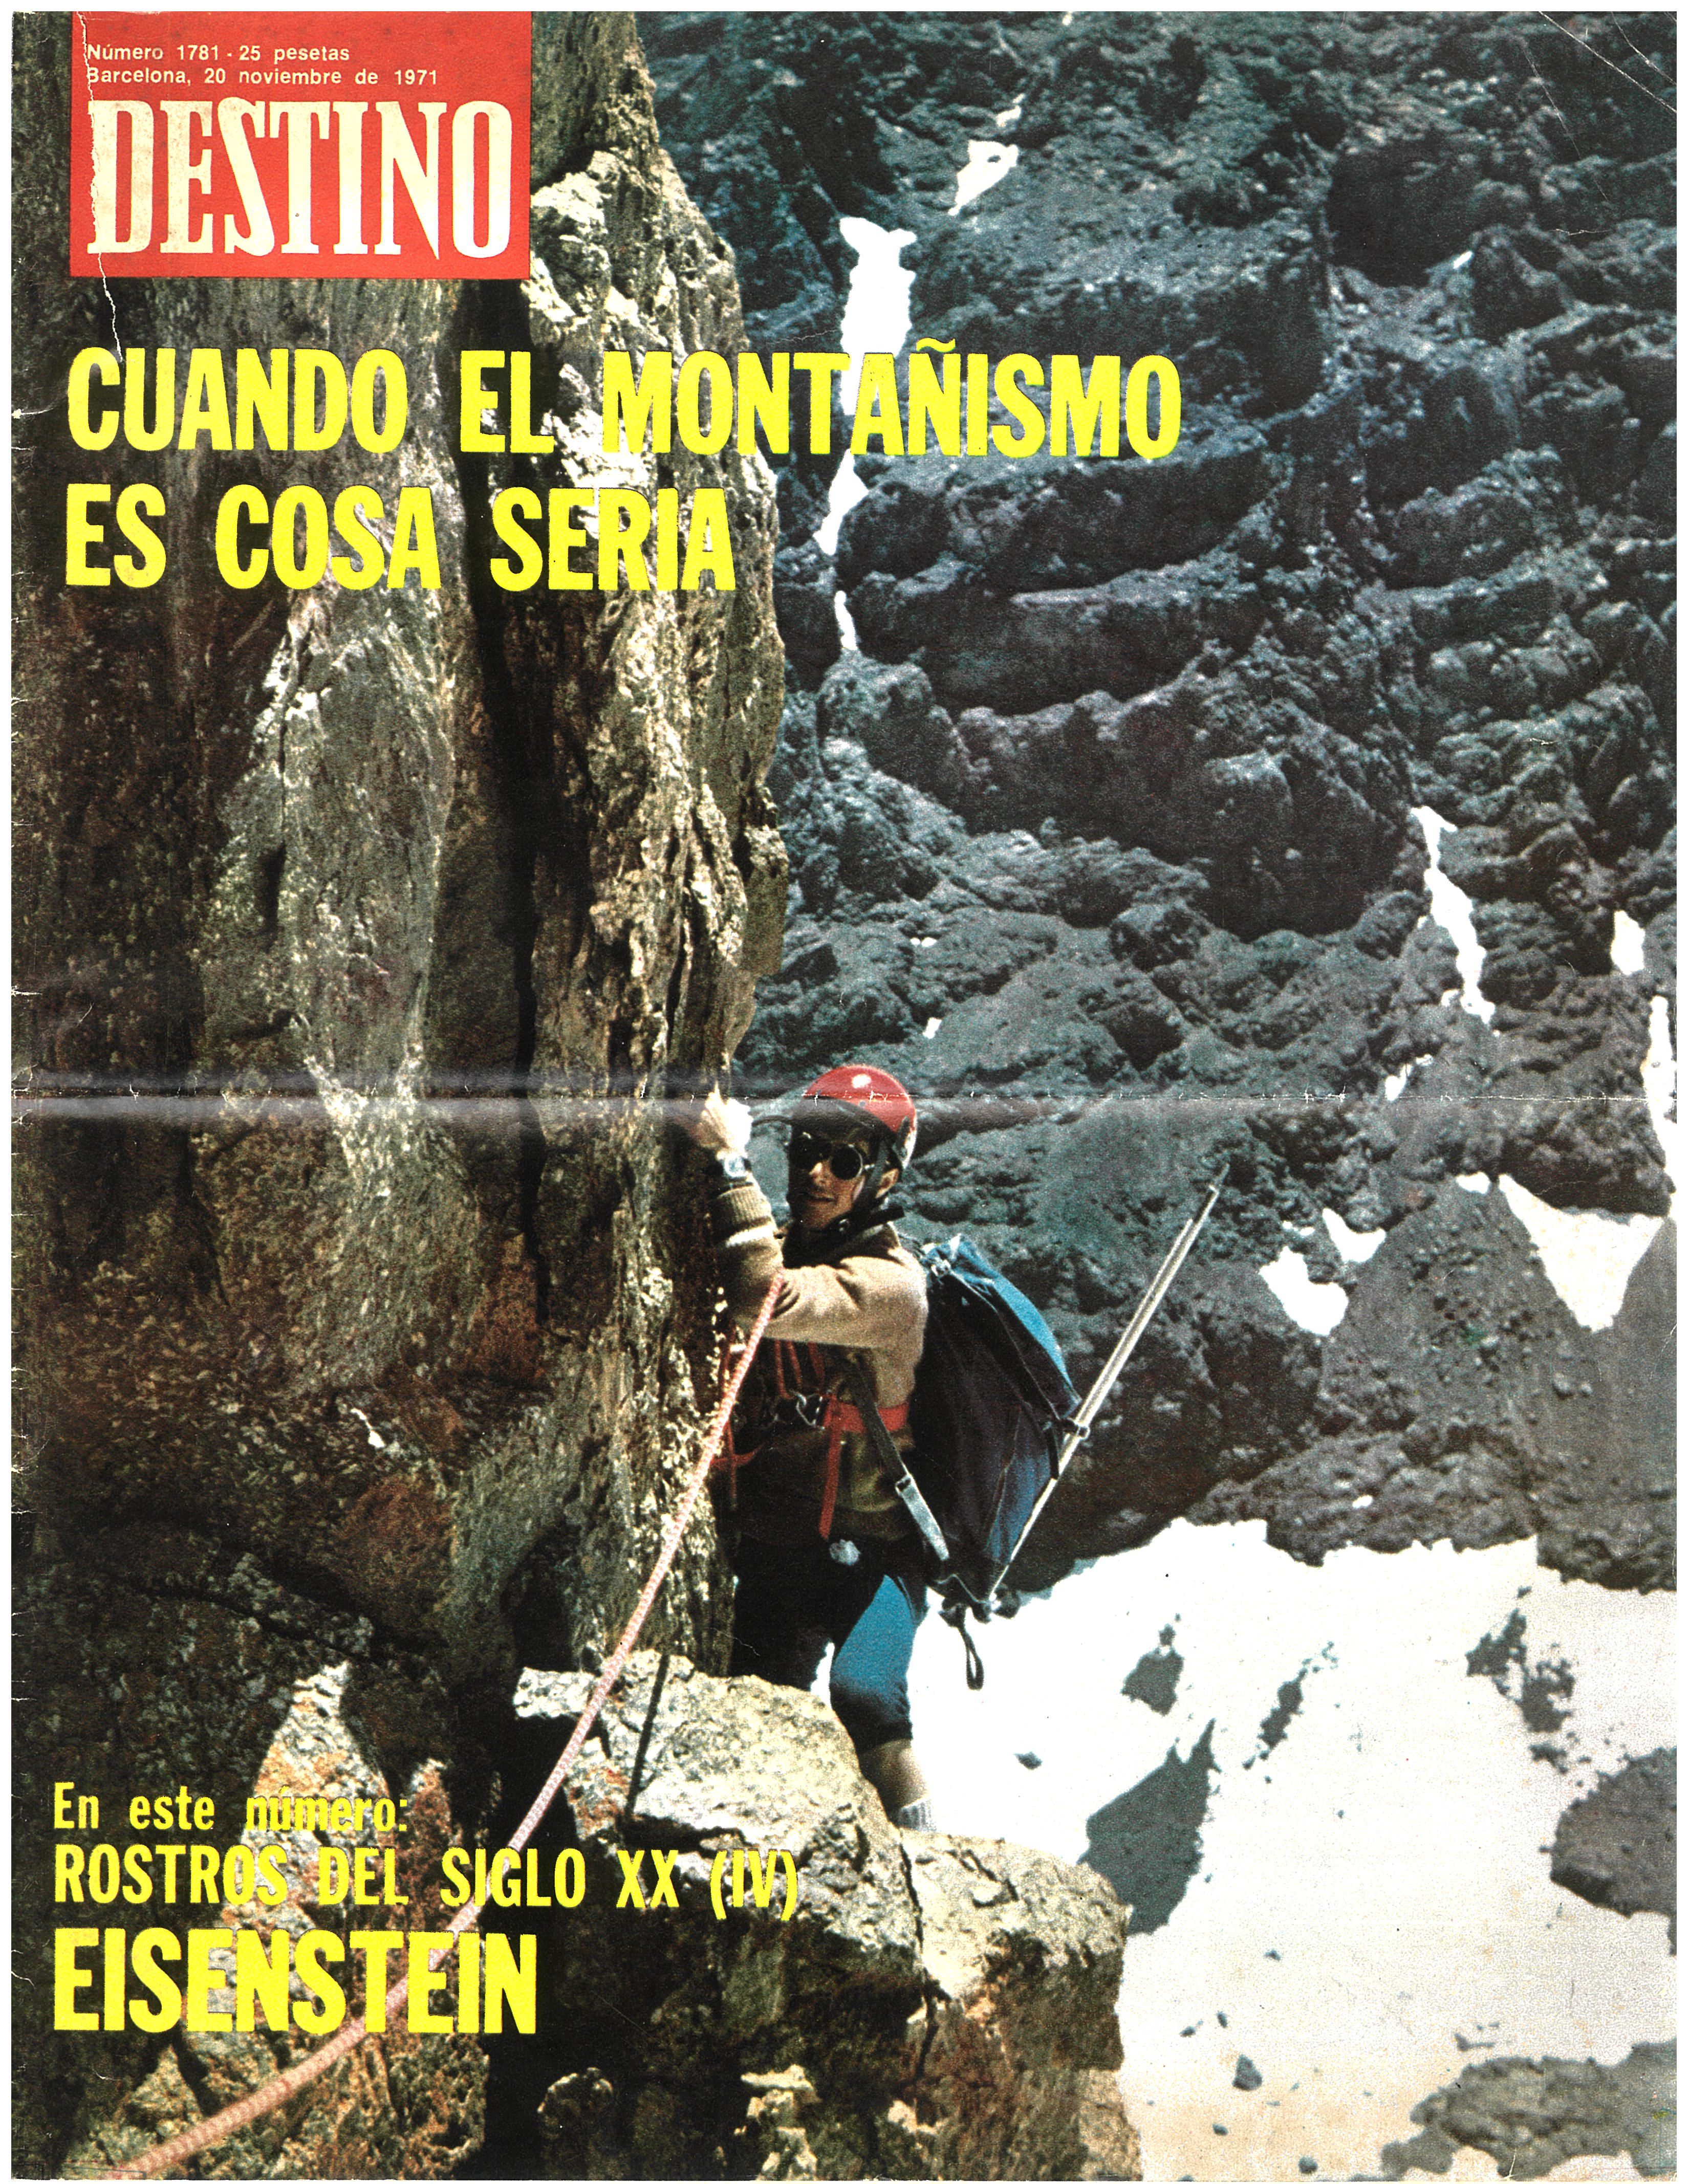 Portada de la revista “Destino” amb el reportatge de l’expedició en portada